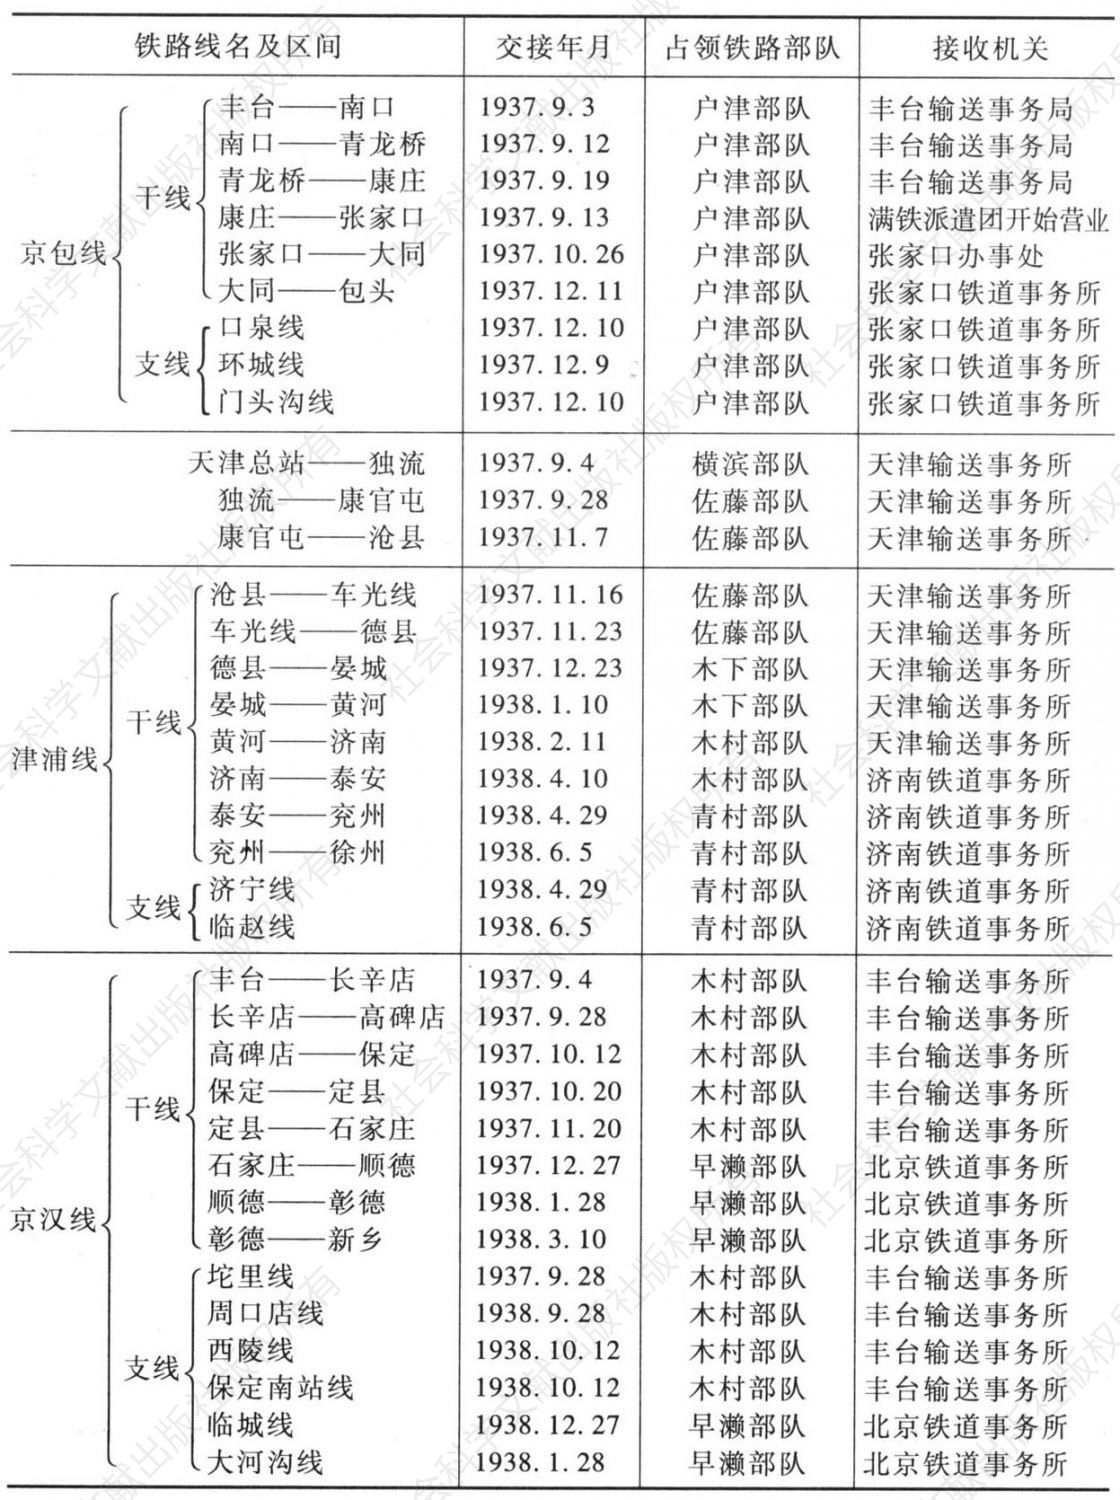 表25-1 满铁接收华北各铁路日程表